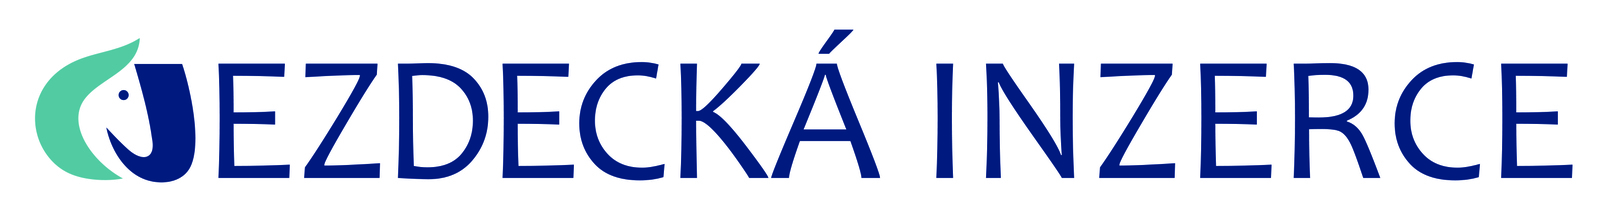 Logo_jezdecka_inzerce.jpg